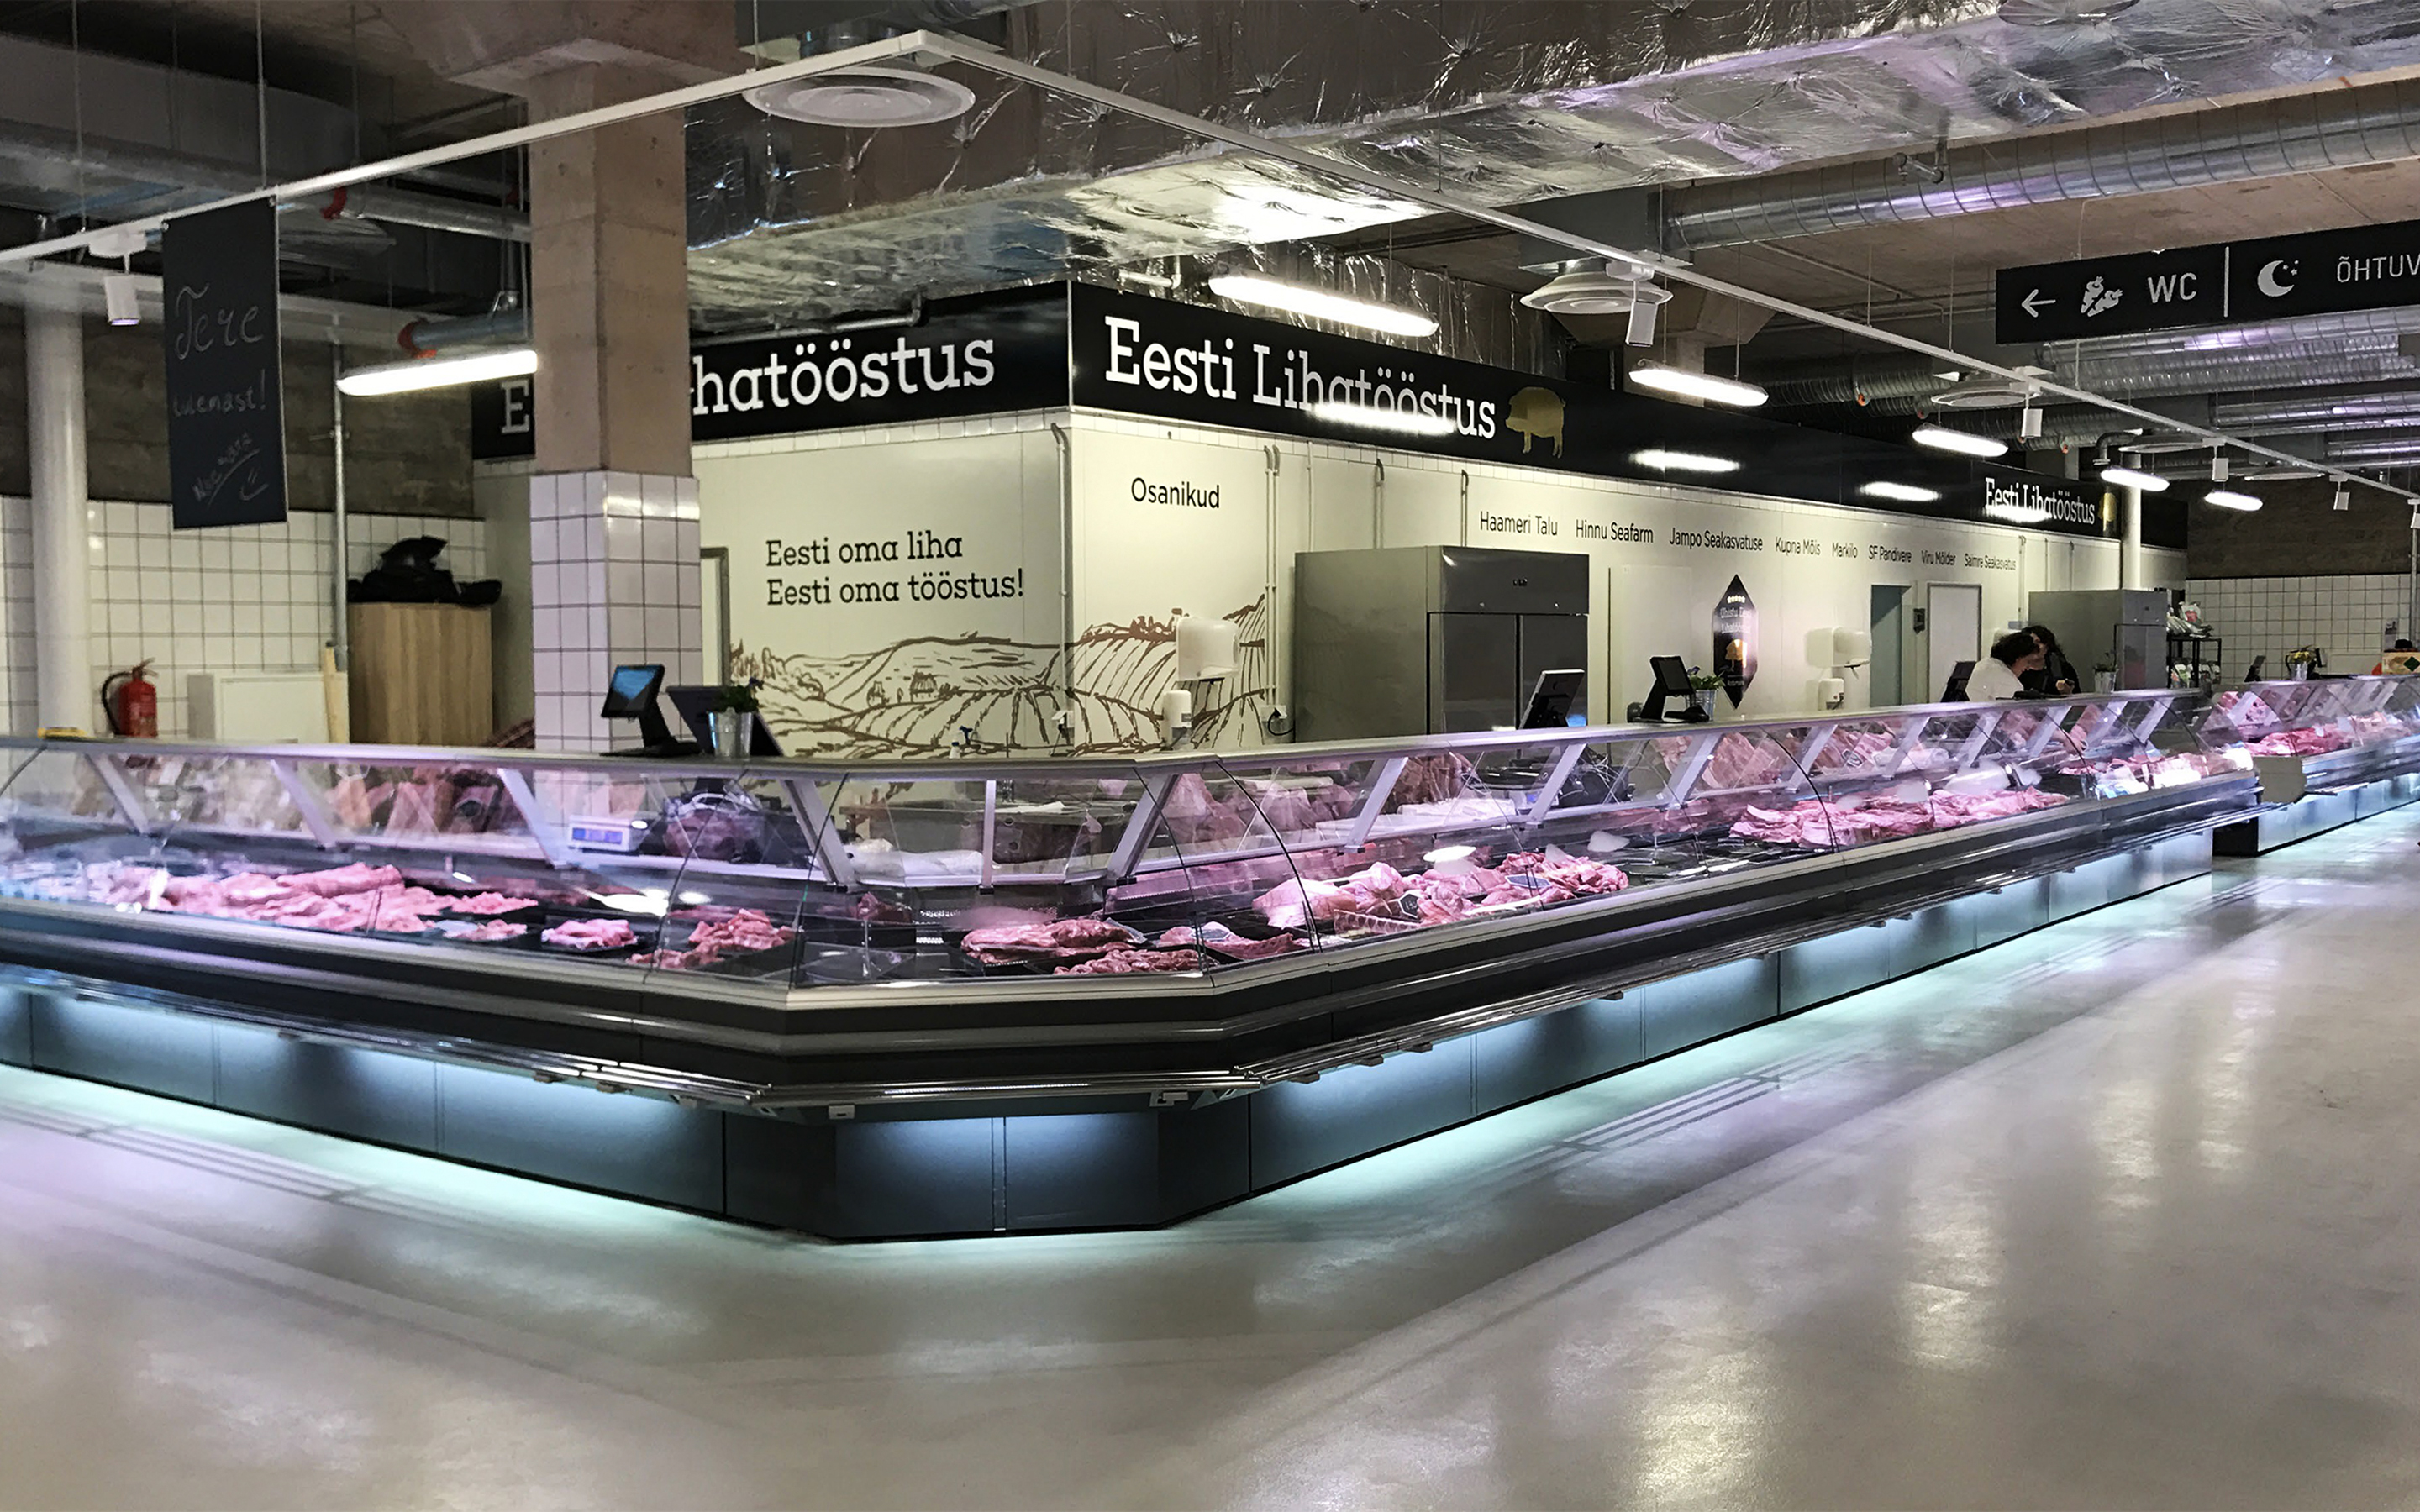 Eesti lihatööstus